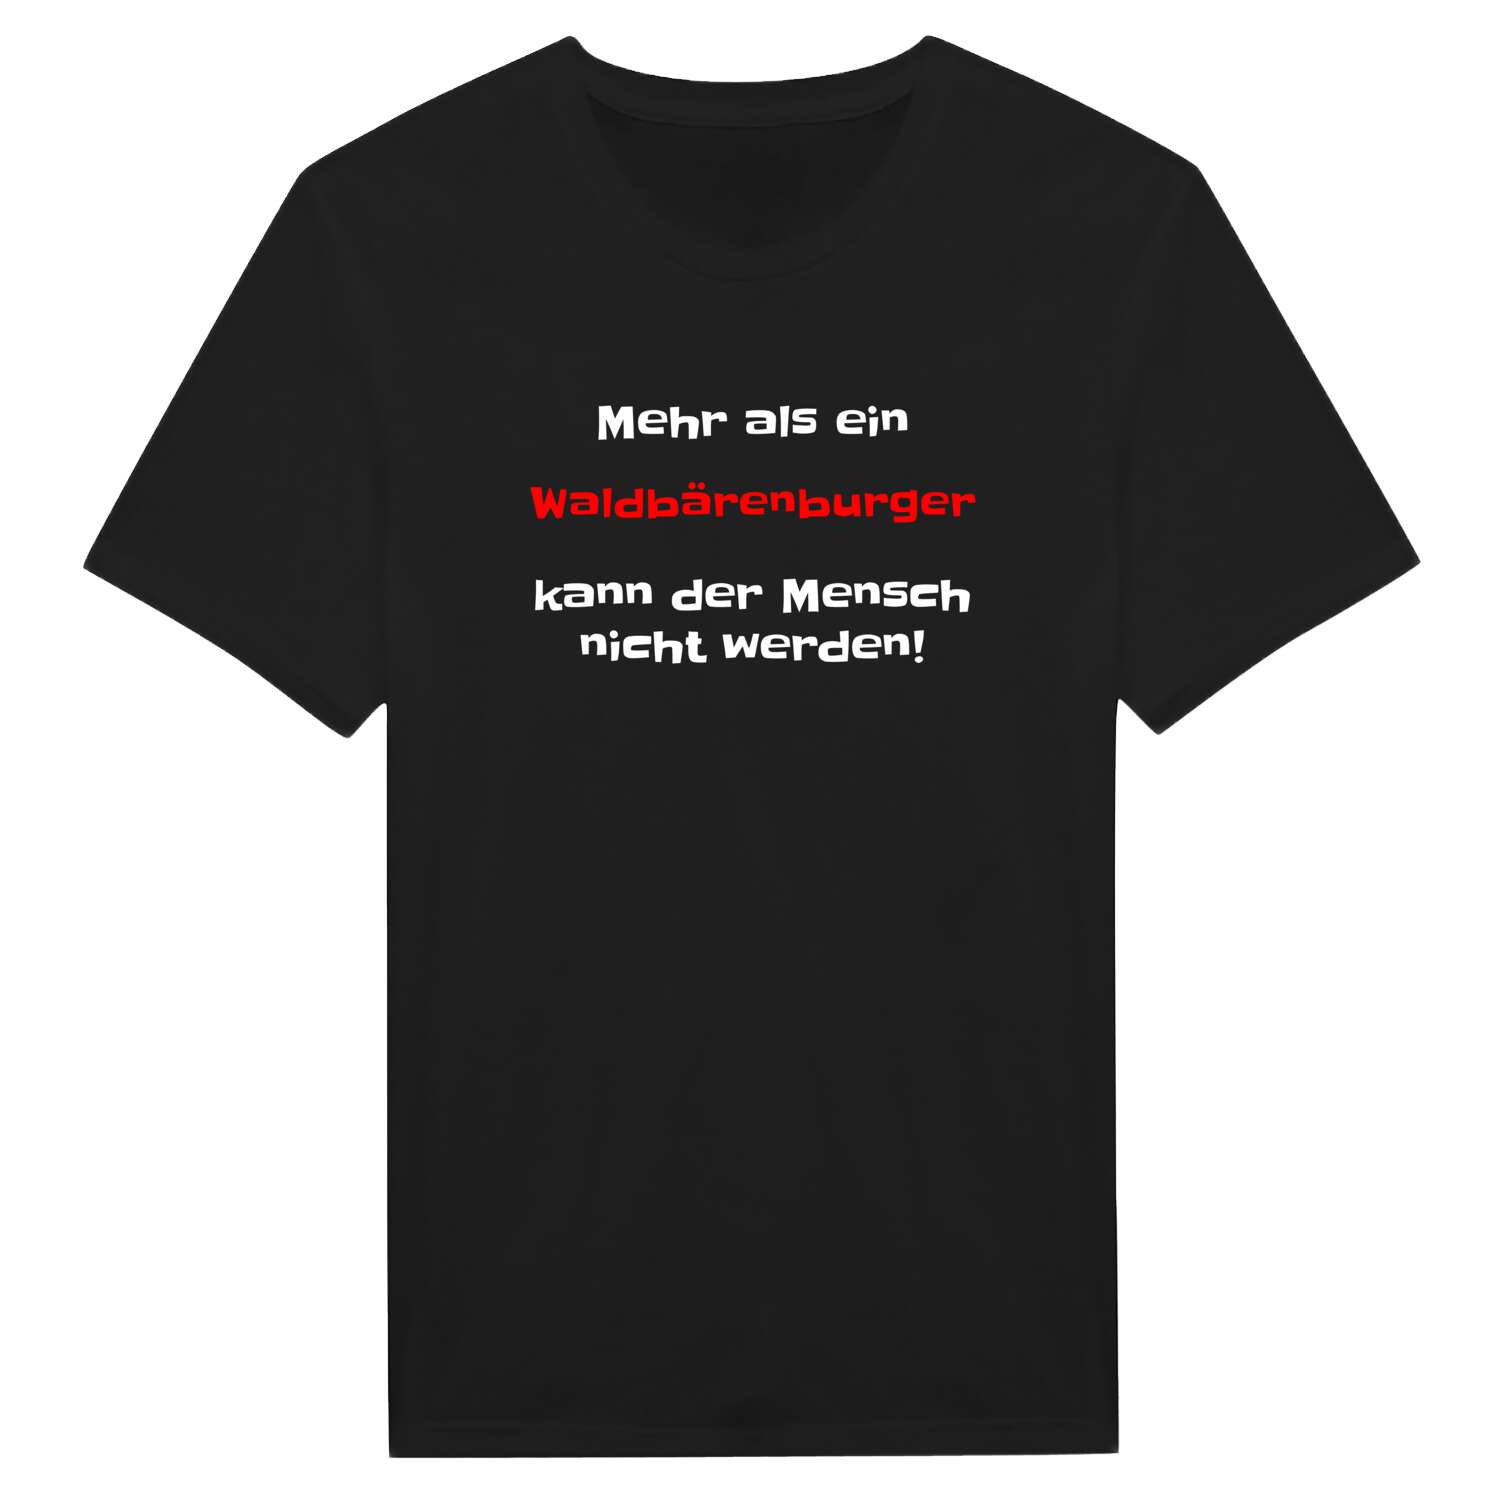 Waldbärenburg T-Shirt »Mehr als ein«